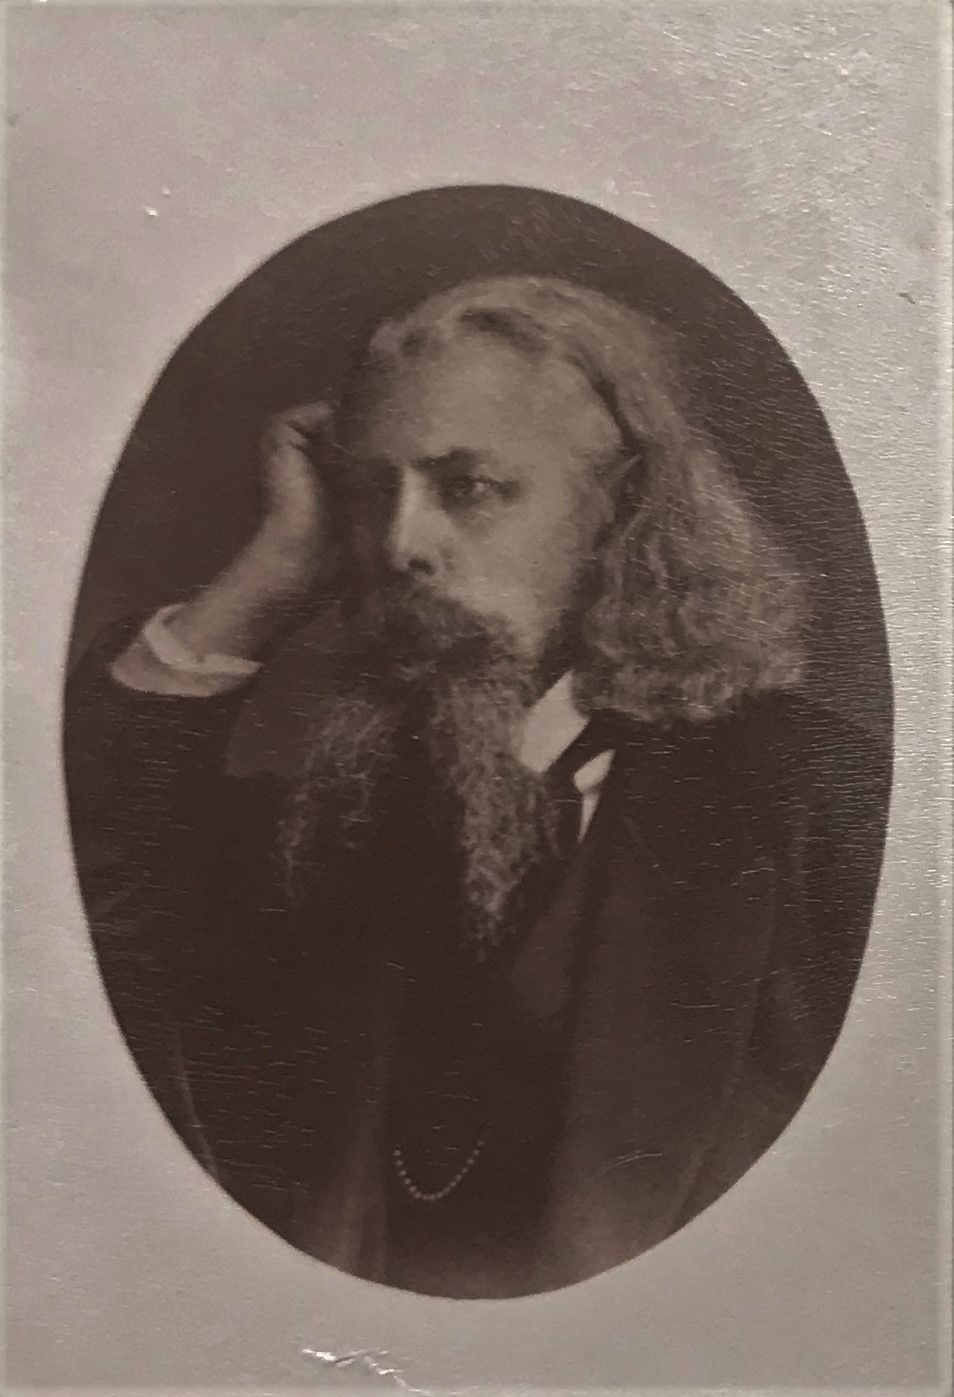 Svartvitt fotografi av en man med långt grått hår och långt tudelat skägg som lutar huvudet mot höger hand.